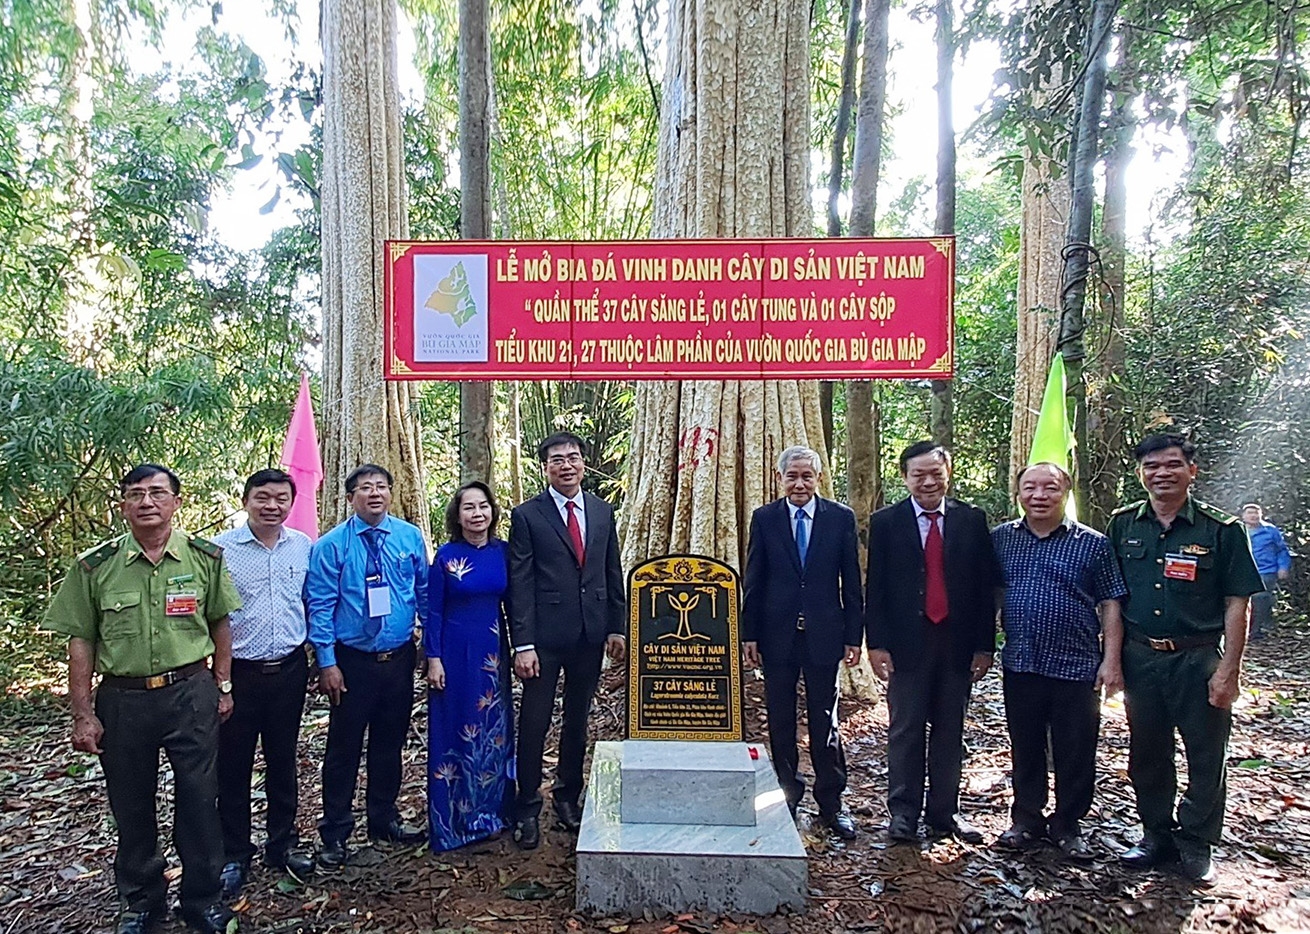 Các đại biểu chụp hình lưu niệm tại quần thể 37 cây săng lẻ (còn gọi là bằng lăng) vừa được công nhận là Cây di sản Việt Nam